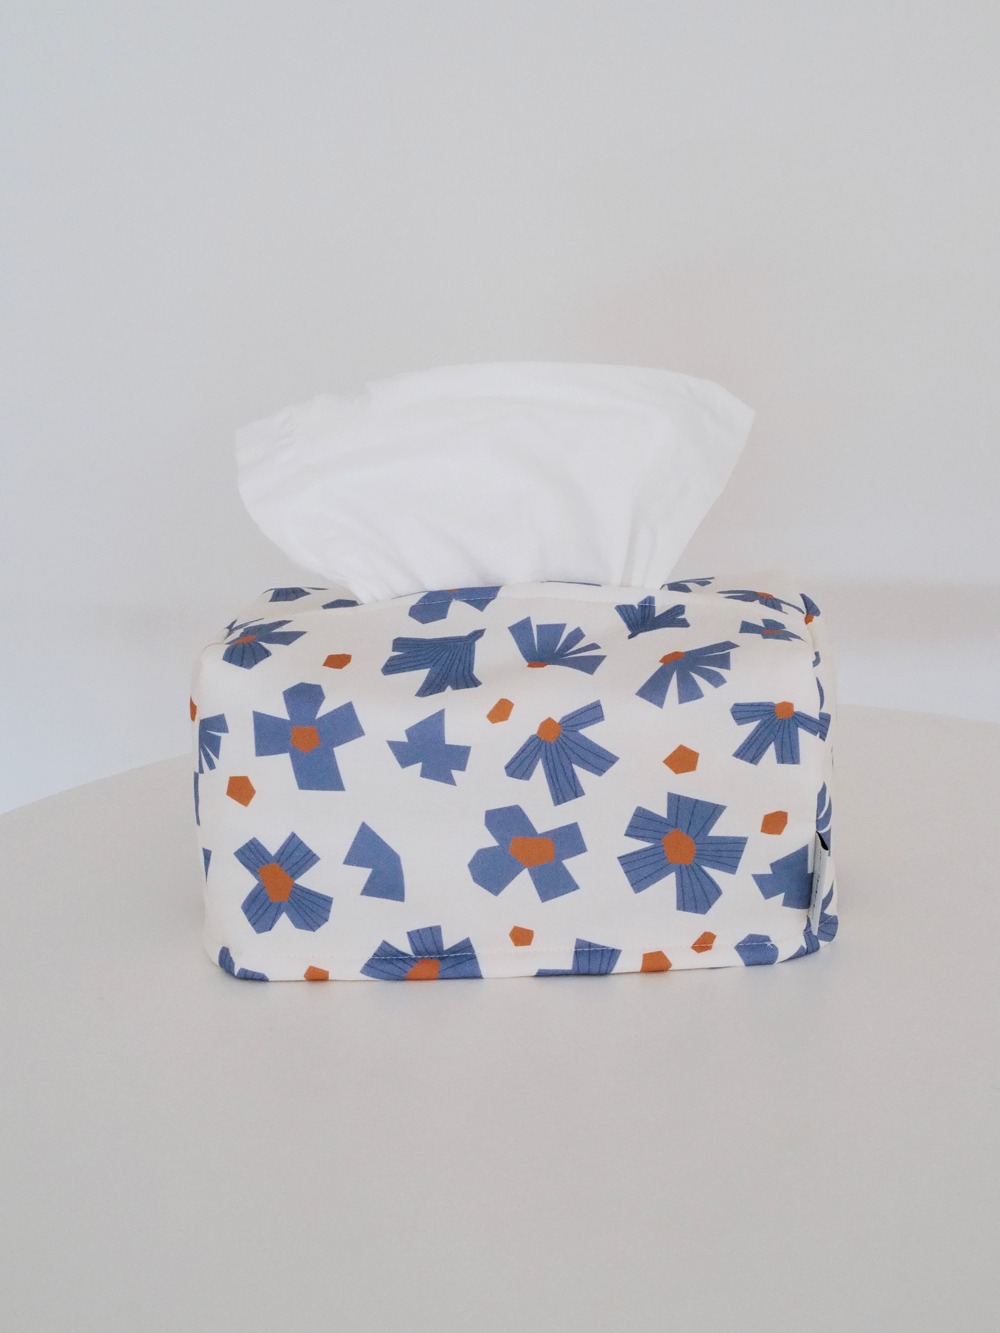 Paper flower tissuebox cover